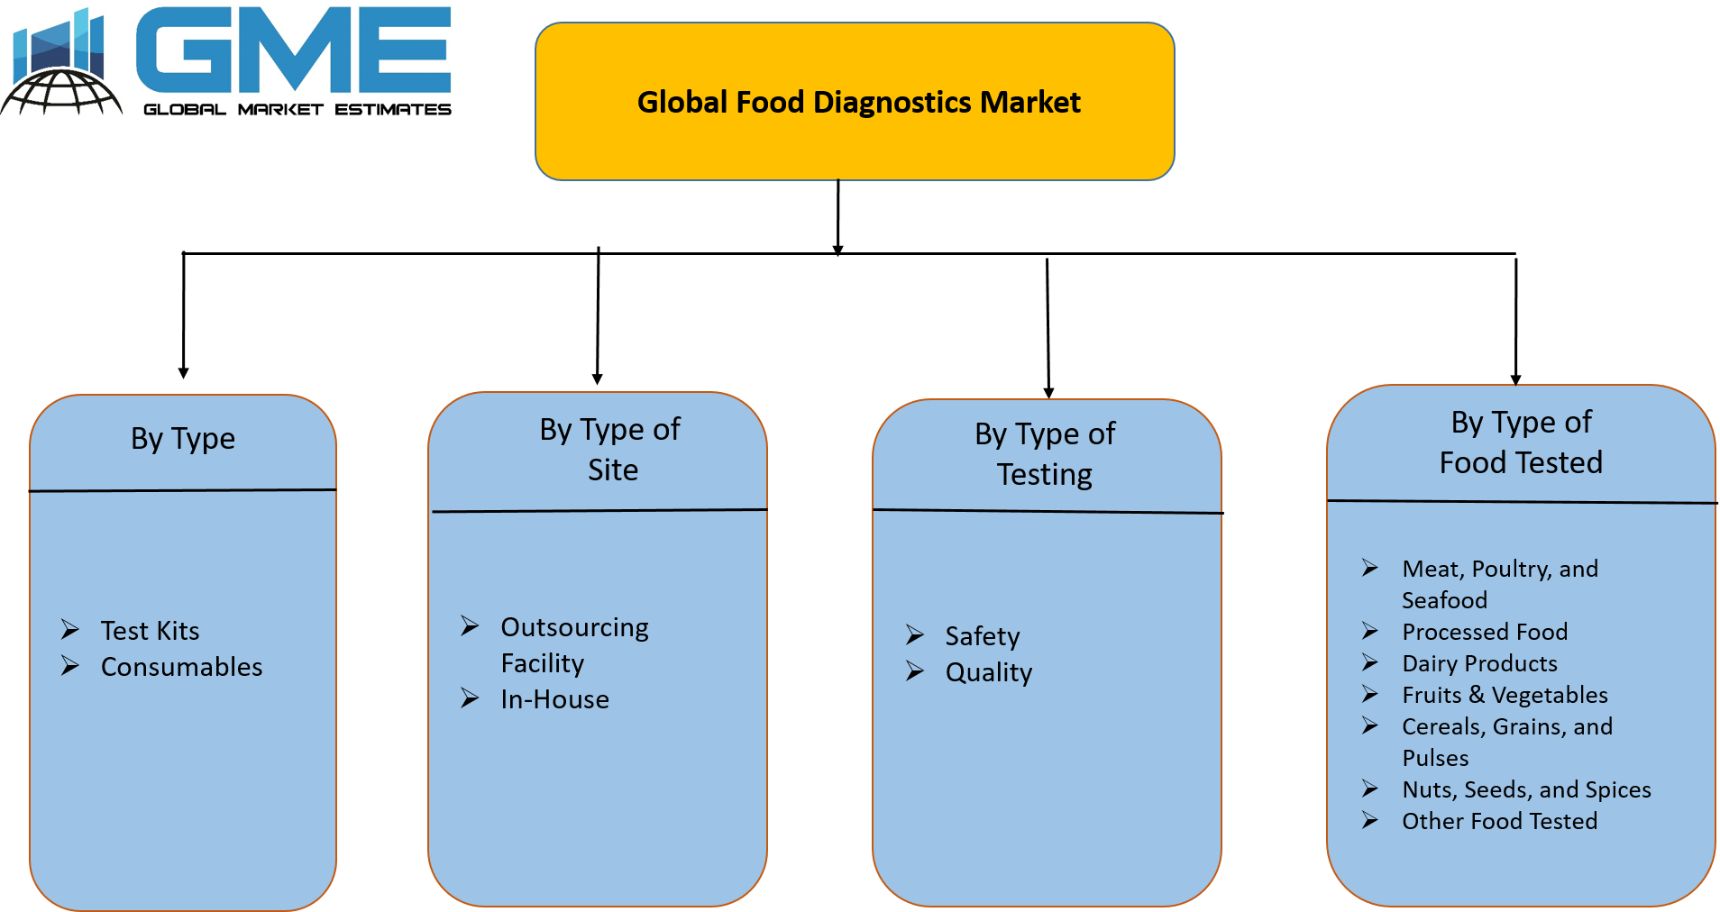 Global Food Diagnostics Market Segmentation